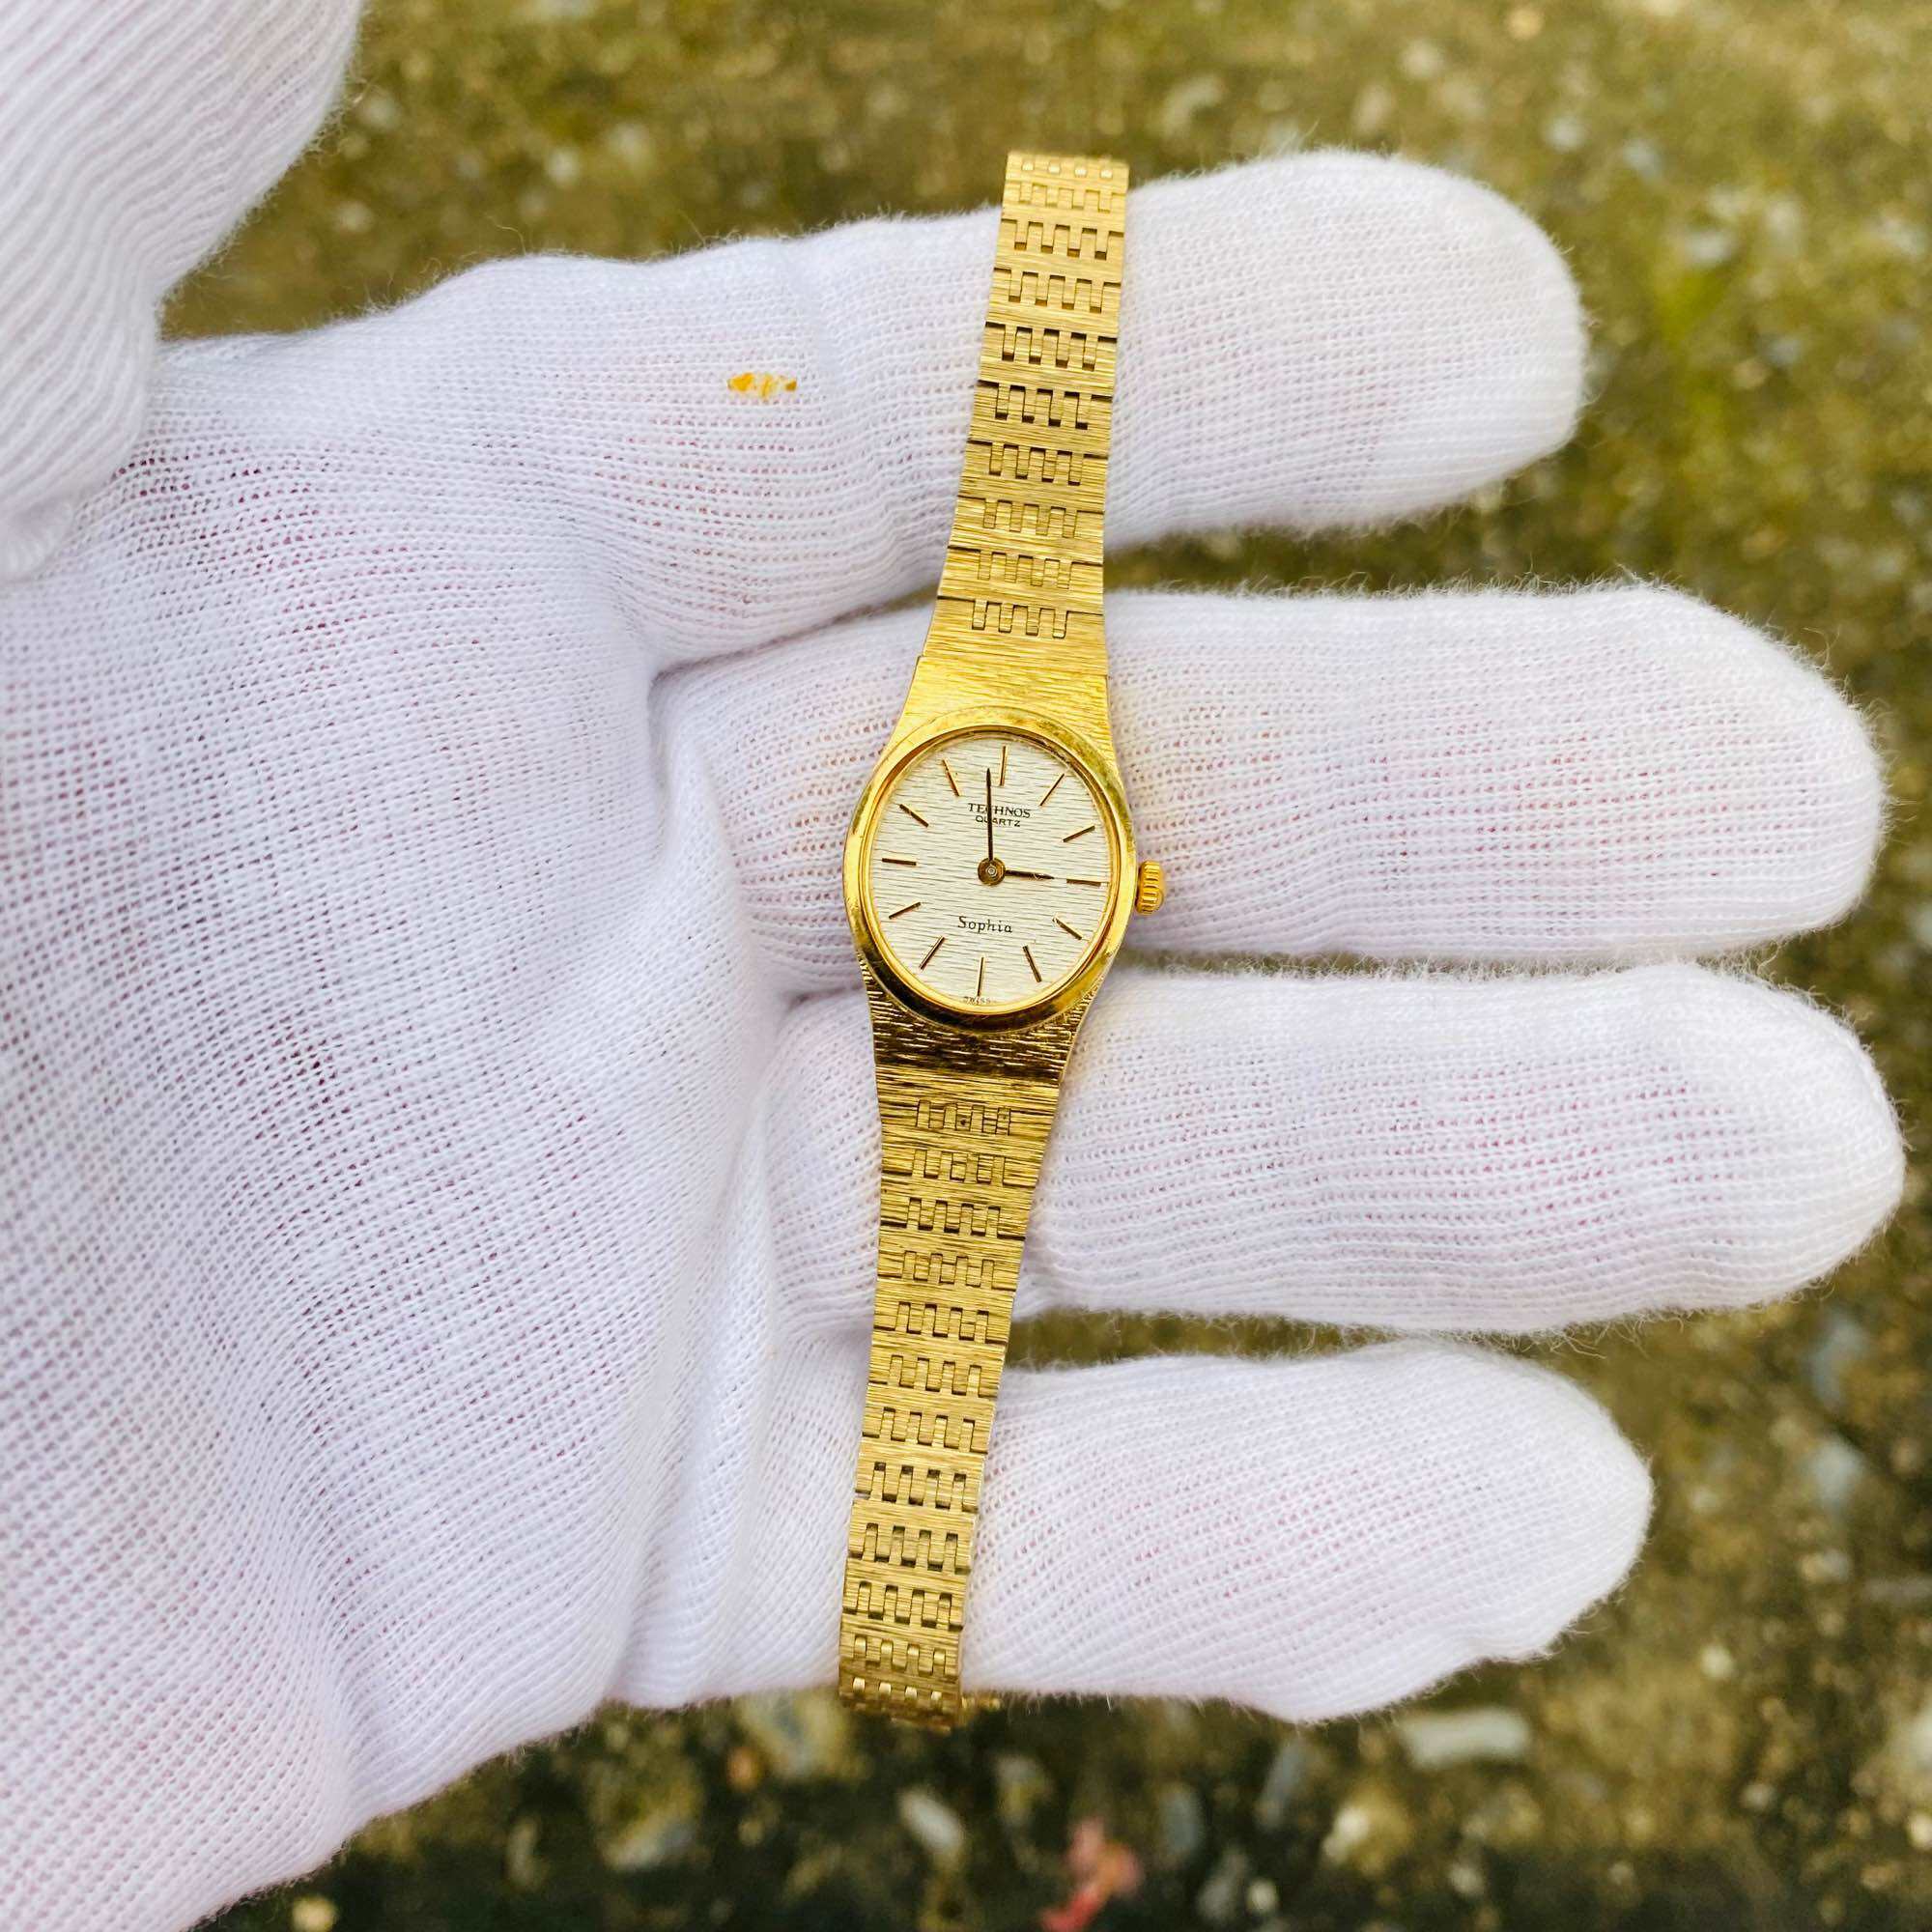 Đồng hồ nữ Technos Thụy sĩ, bọc vàng toàn thân, mặt size 17mm, dây thép không rỉ zin theo máy, độ mới đạt 95%, cam kết hàng chính hãng